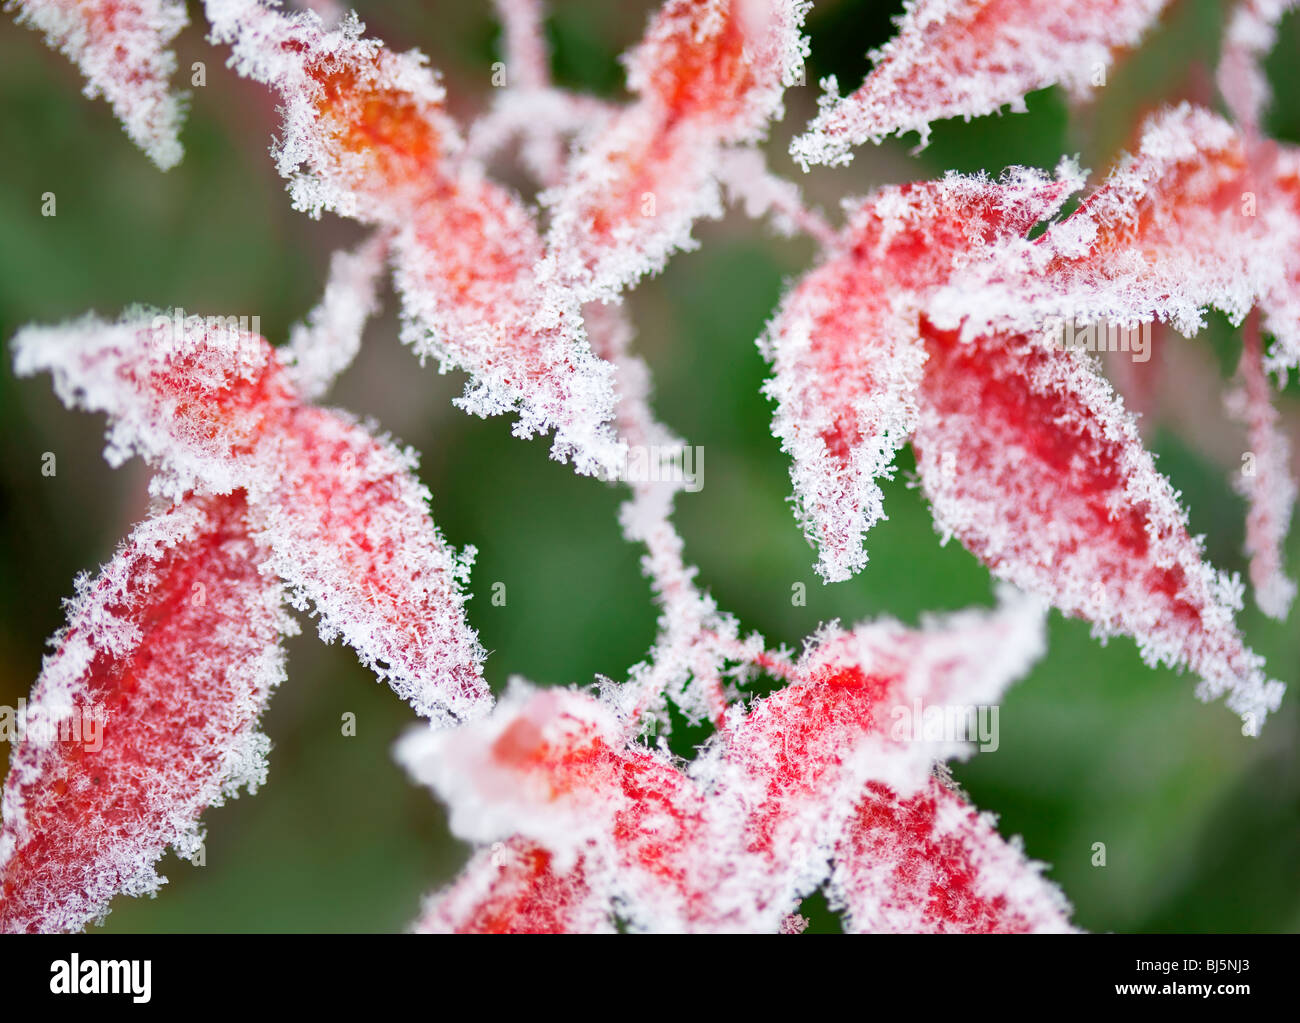 Hoar frost on leaves. Wilsonville, OR Stock Photo